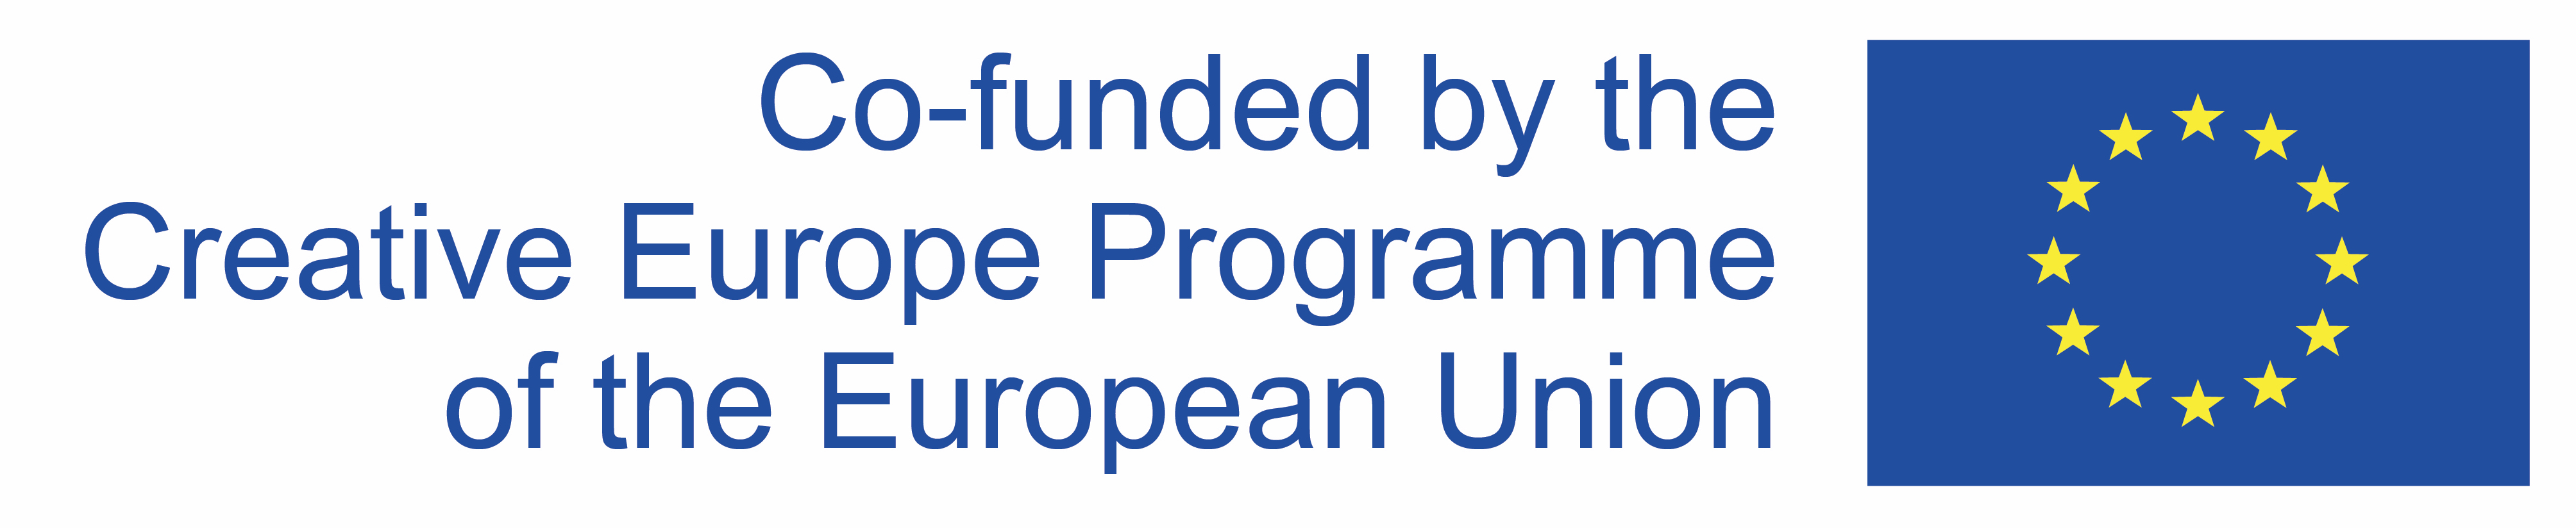 Creative European Programme of the European Union Logo